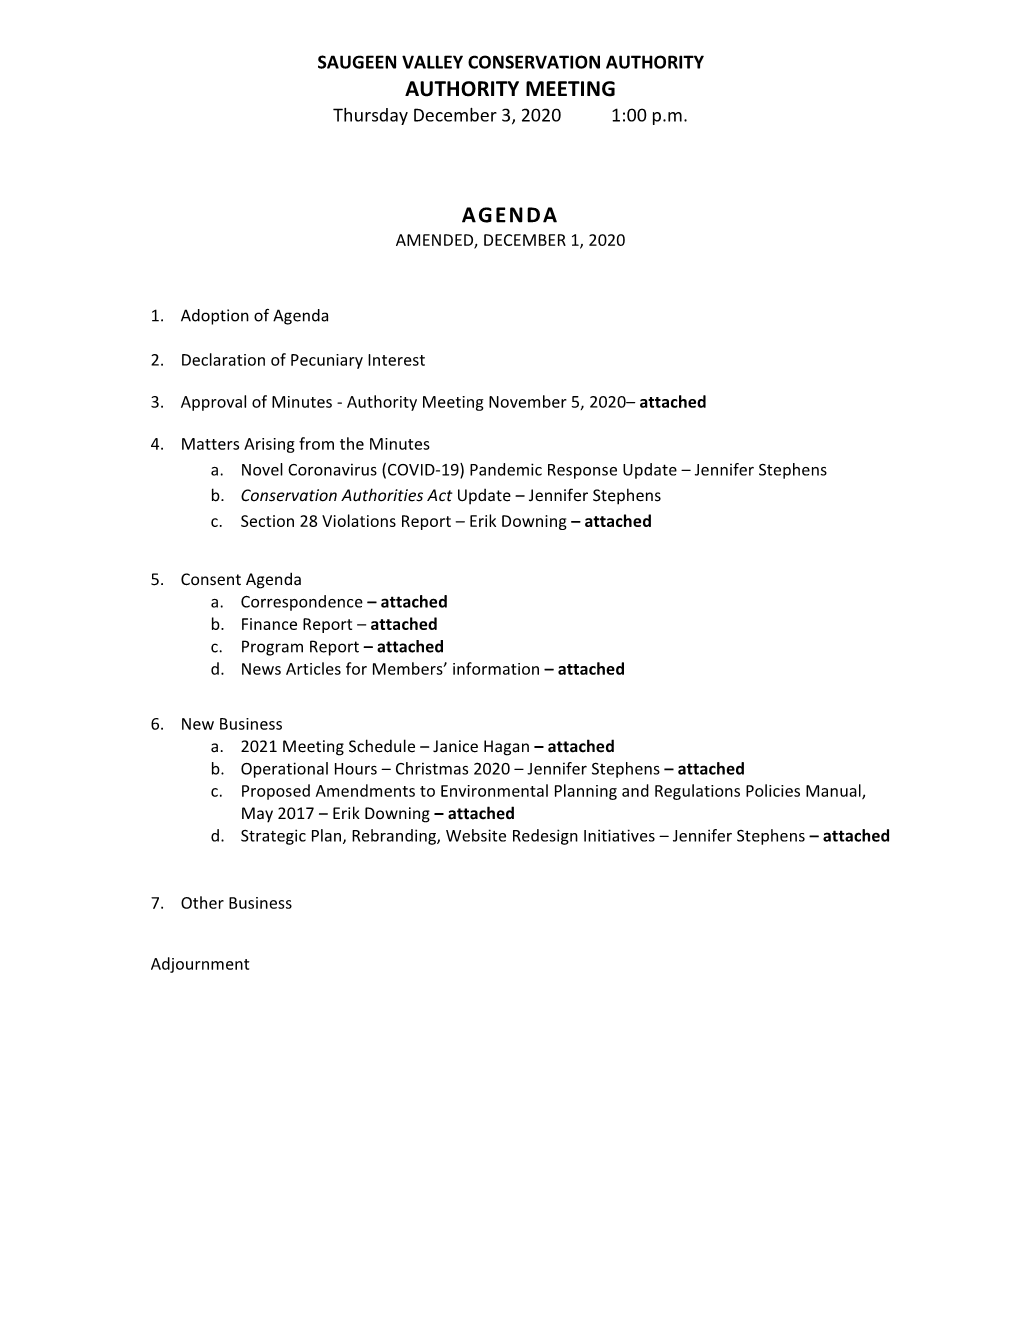 Authority Meeting Agenda